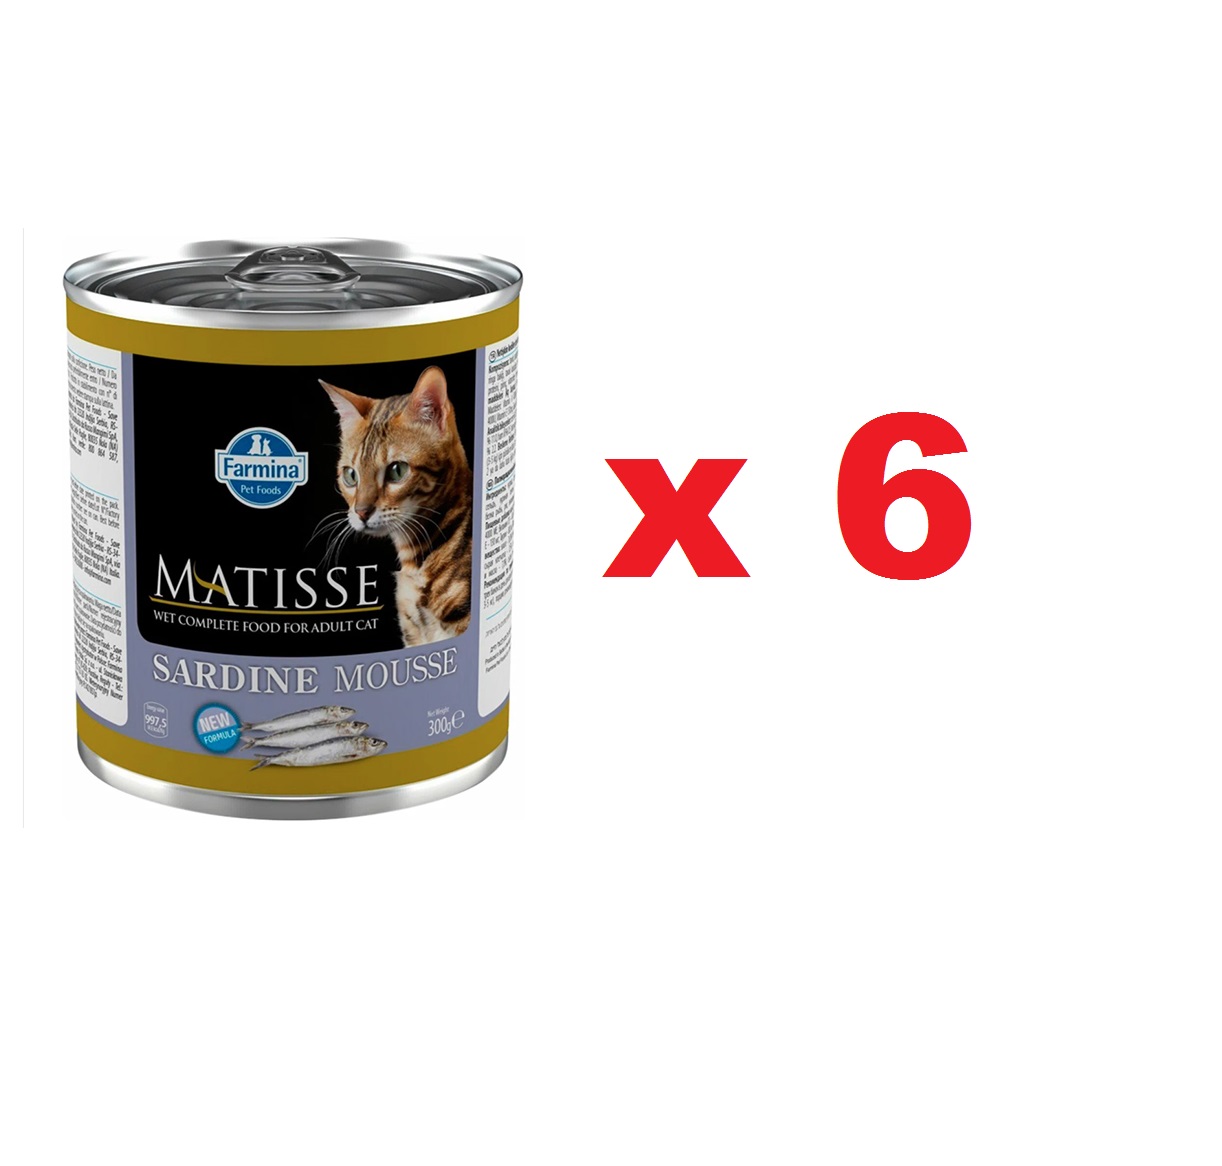 Матис 300гр мусс для кошек - Сардины (Matisse), 1коробка = 6штук